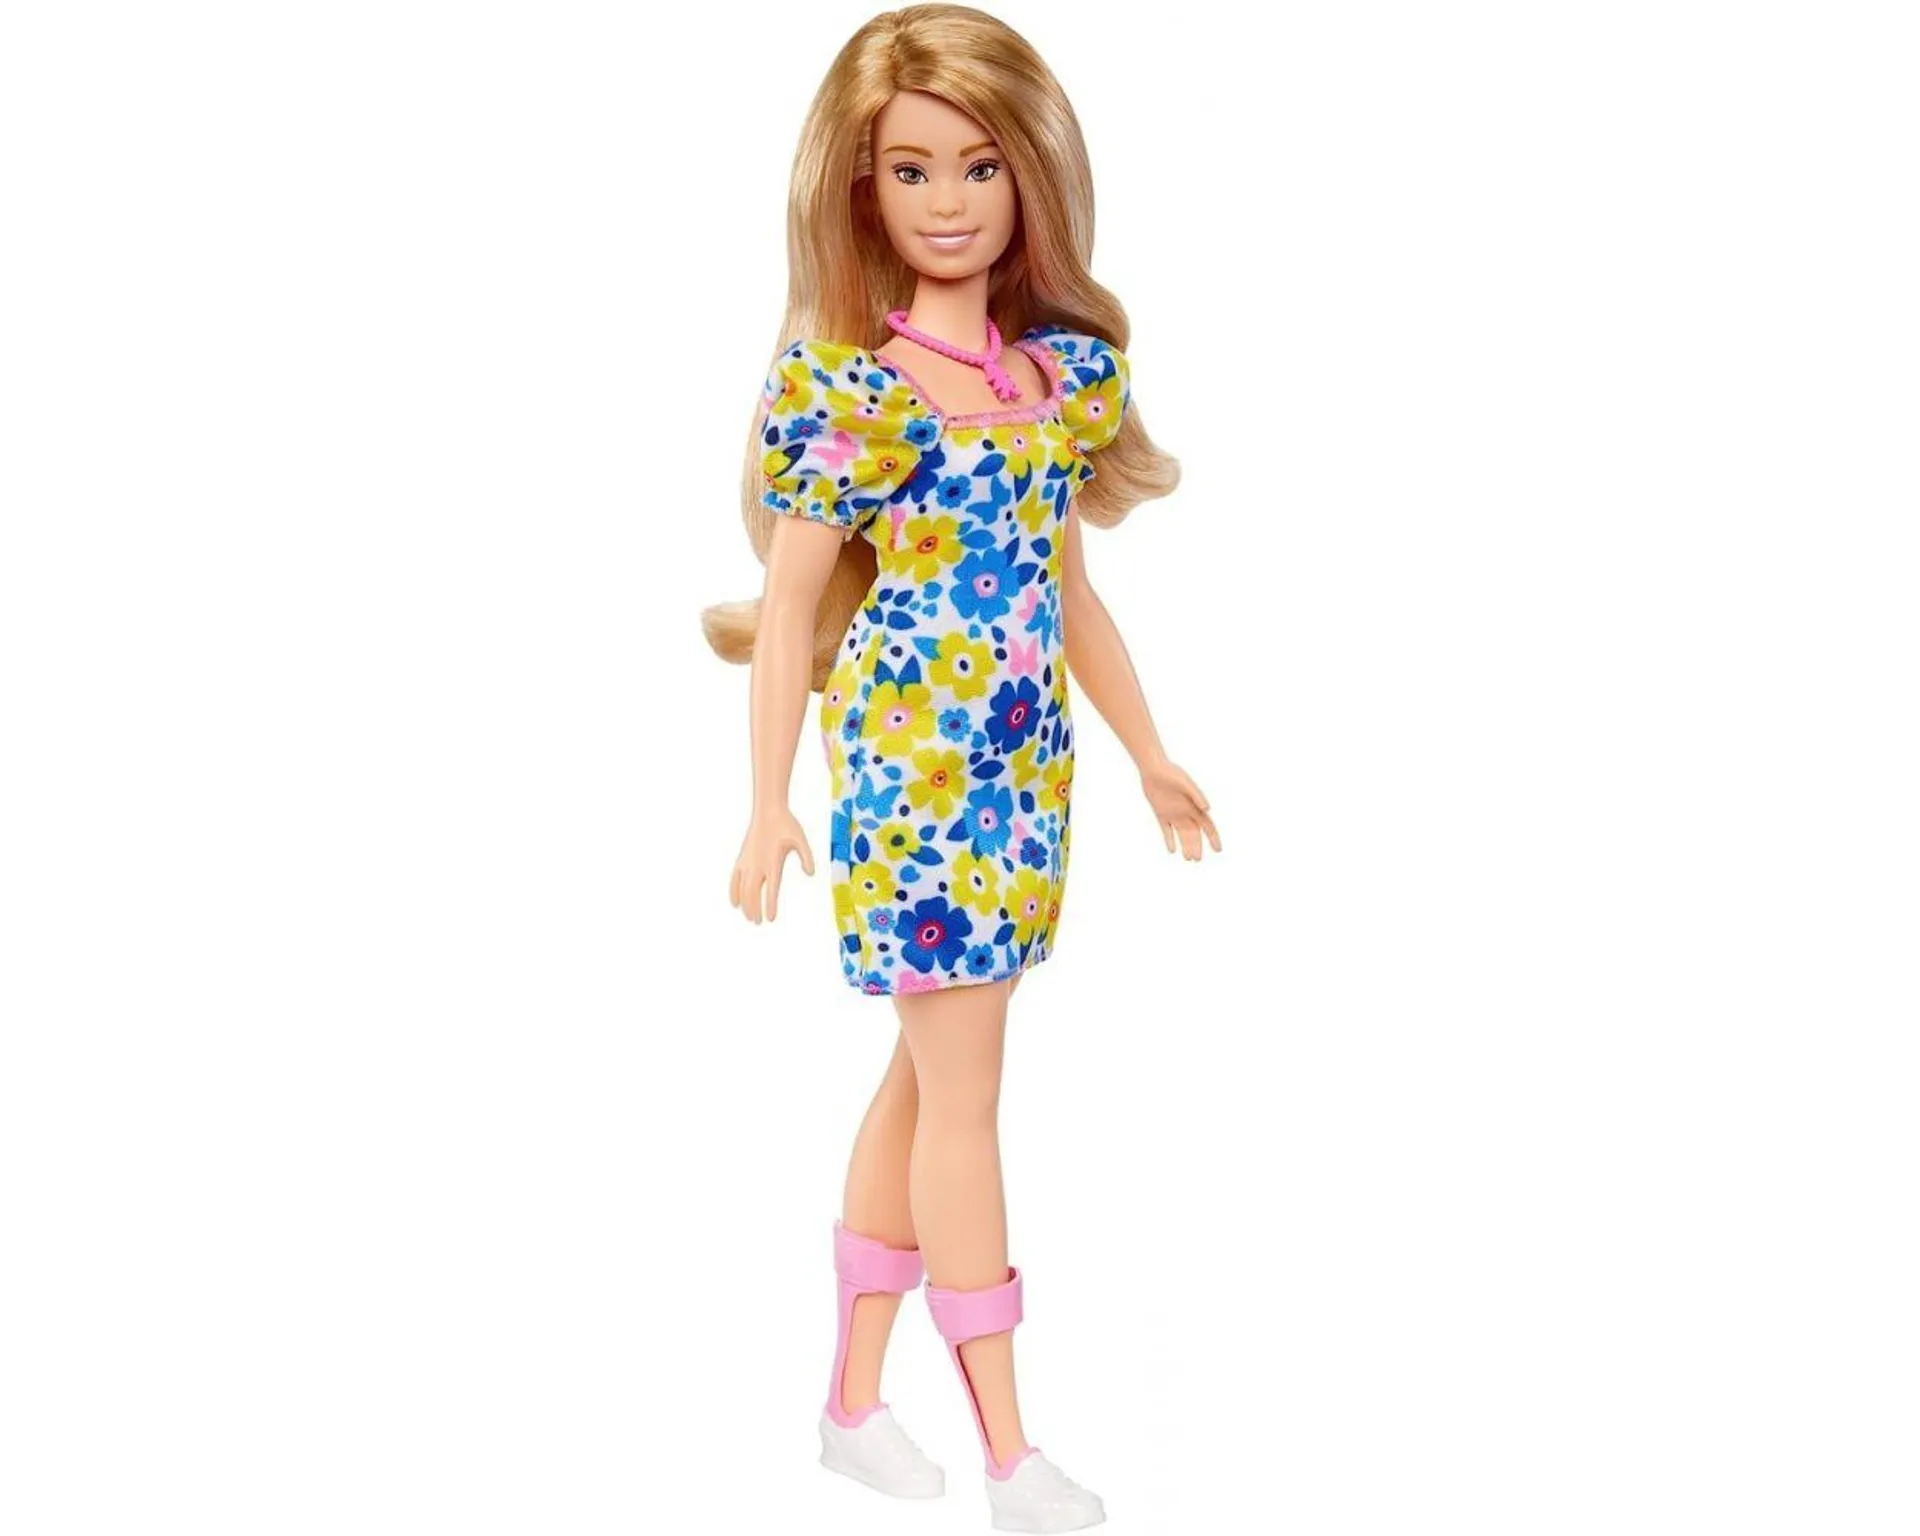 Barbie Fashionista Muñeca con síndrome de Down